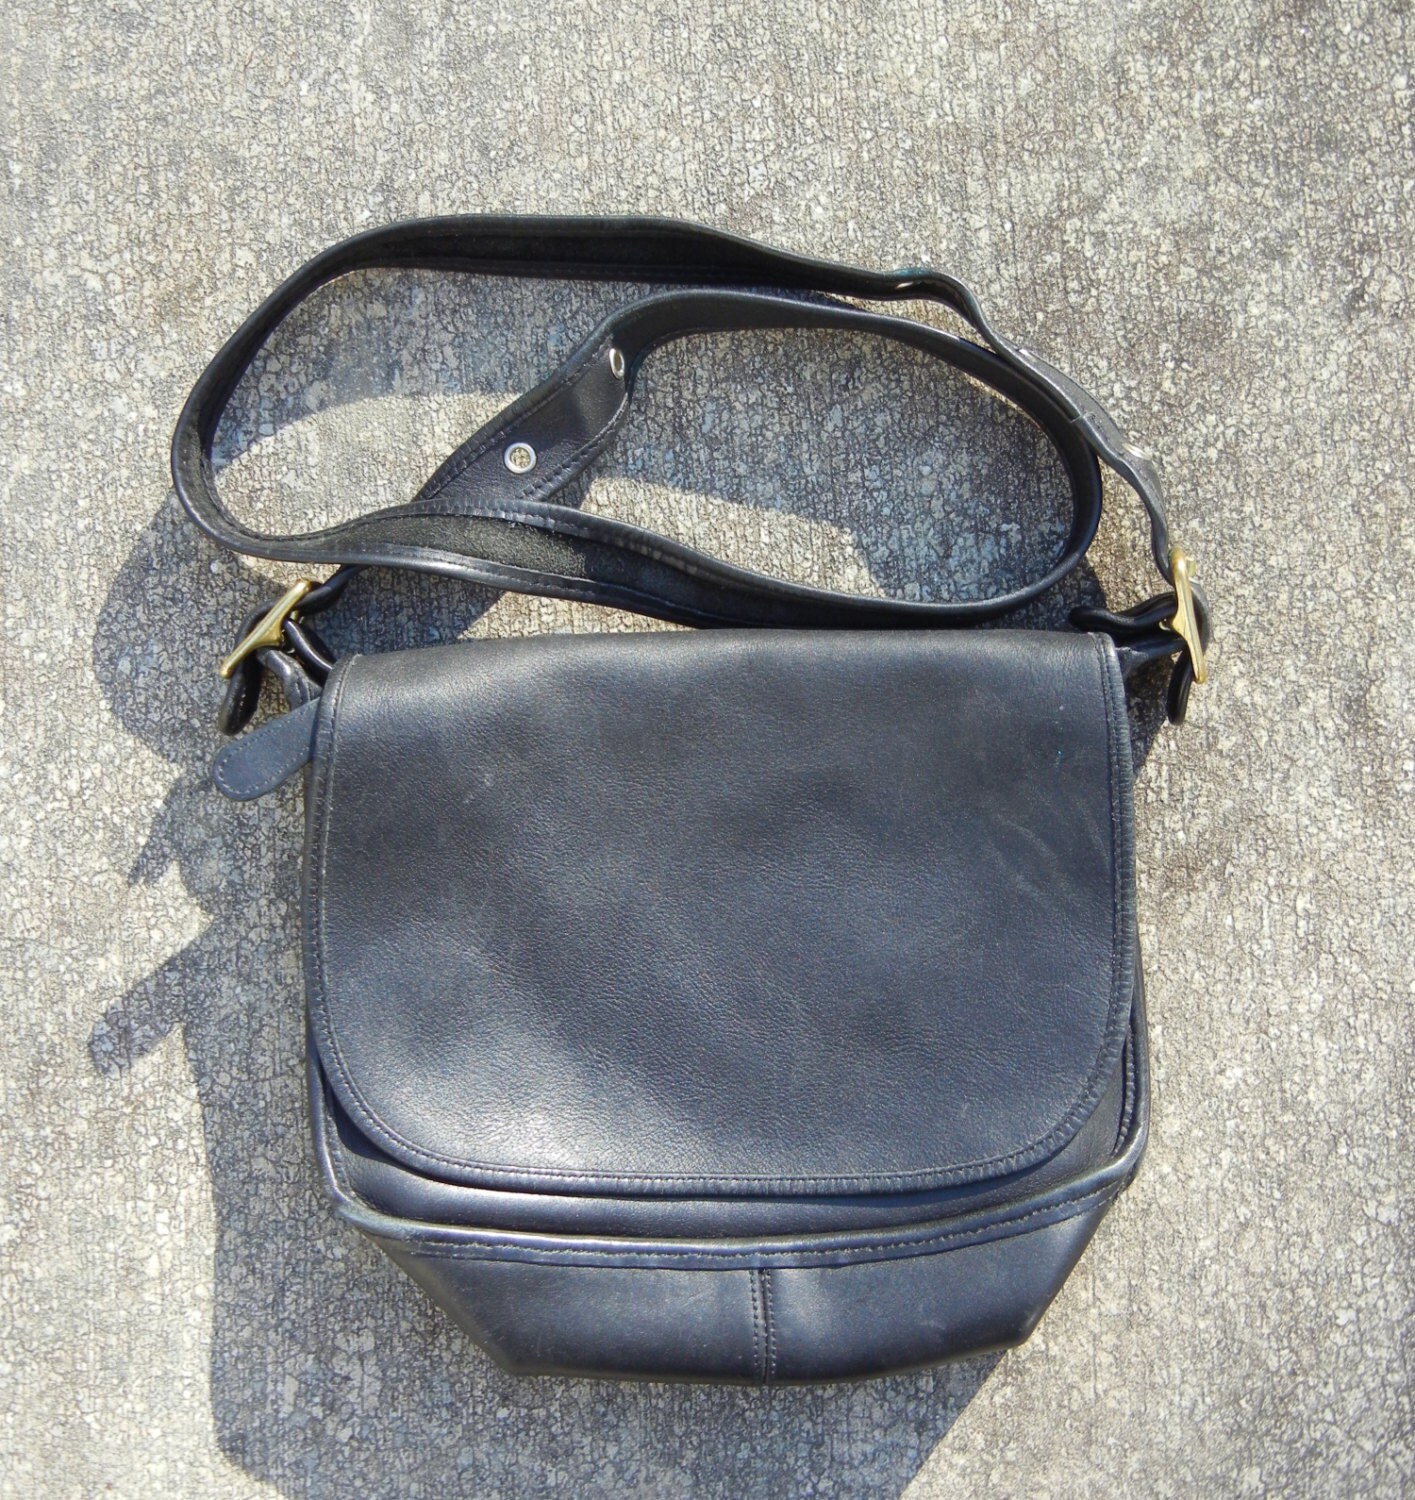 Vintage AUTHENTIC Black COACH Purse Large Coach Bag Leather